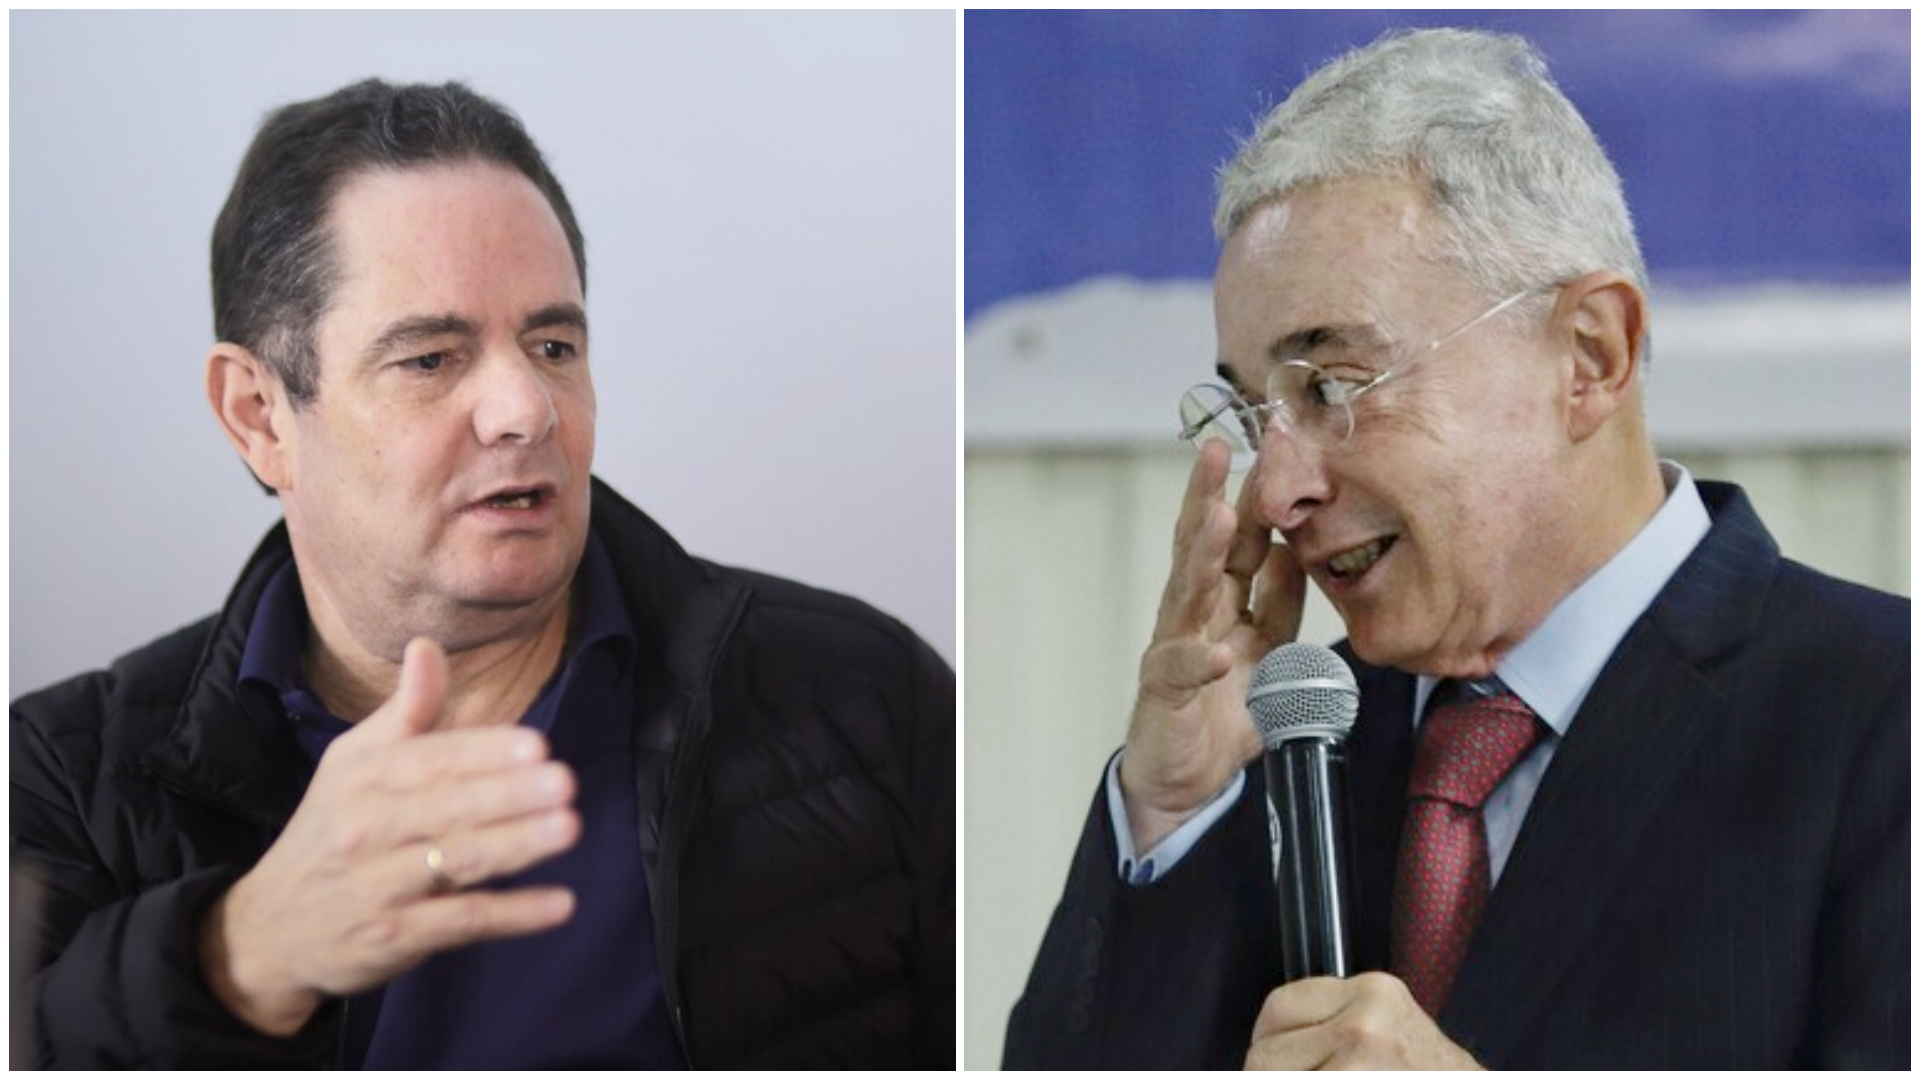 Germán Vargas Lleras le reclamó a Álvaro Uribe por no hacerle oposición “beligerante” a Petro: “Nos hemos sentido solos”